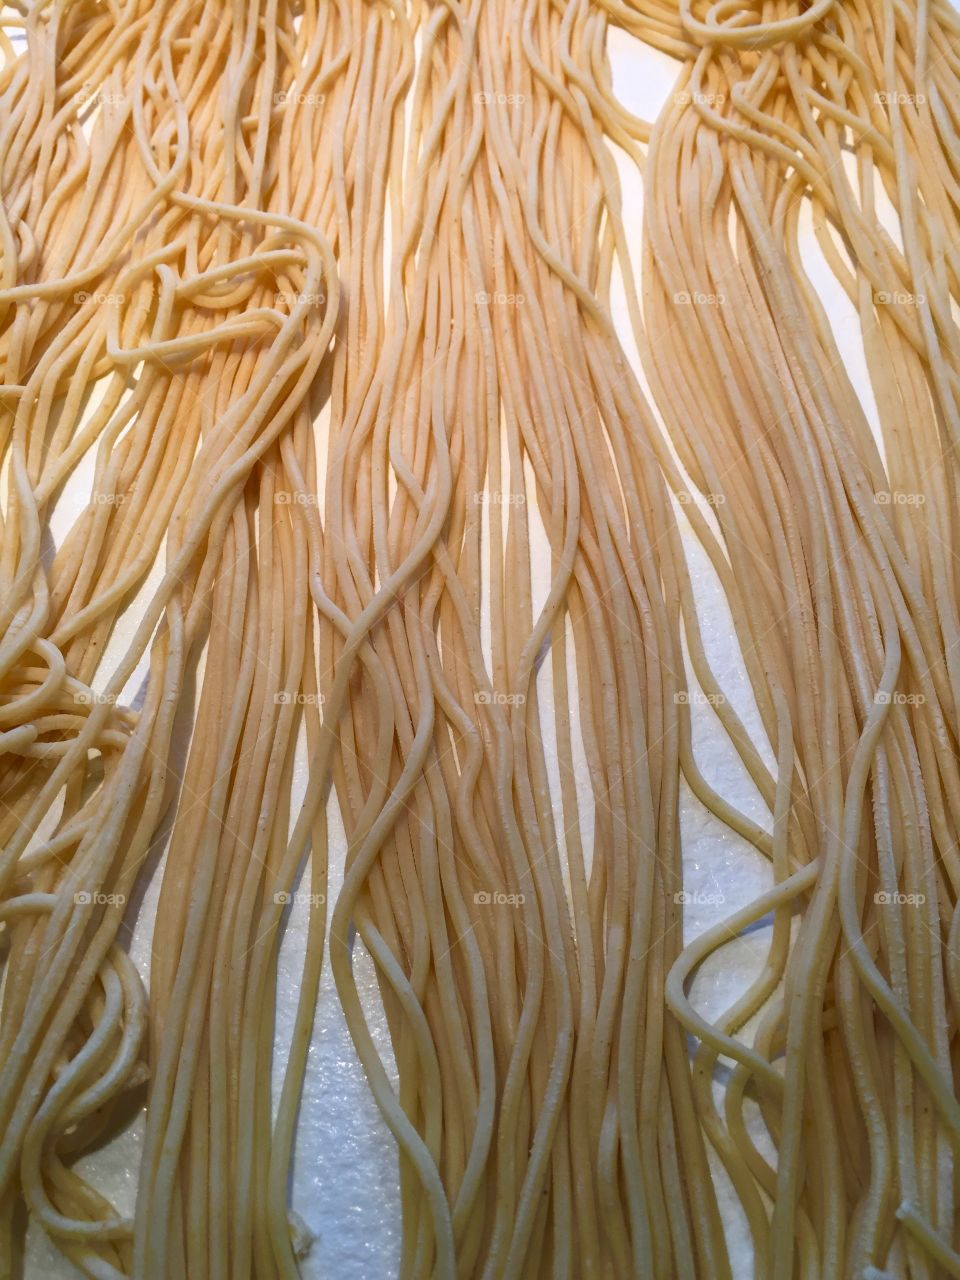 Home made pasta 